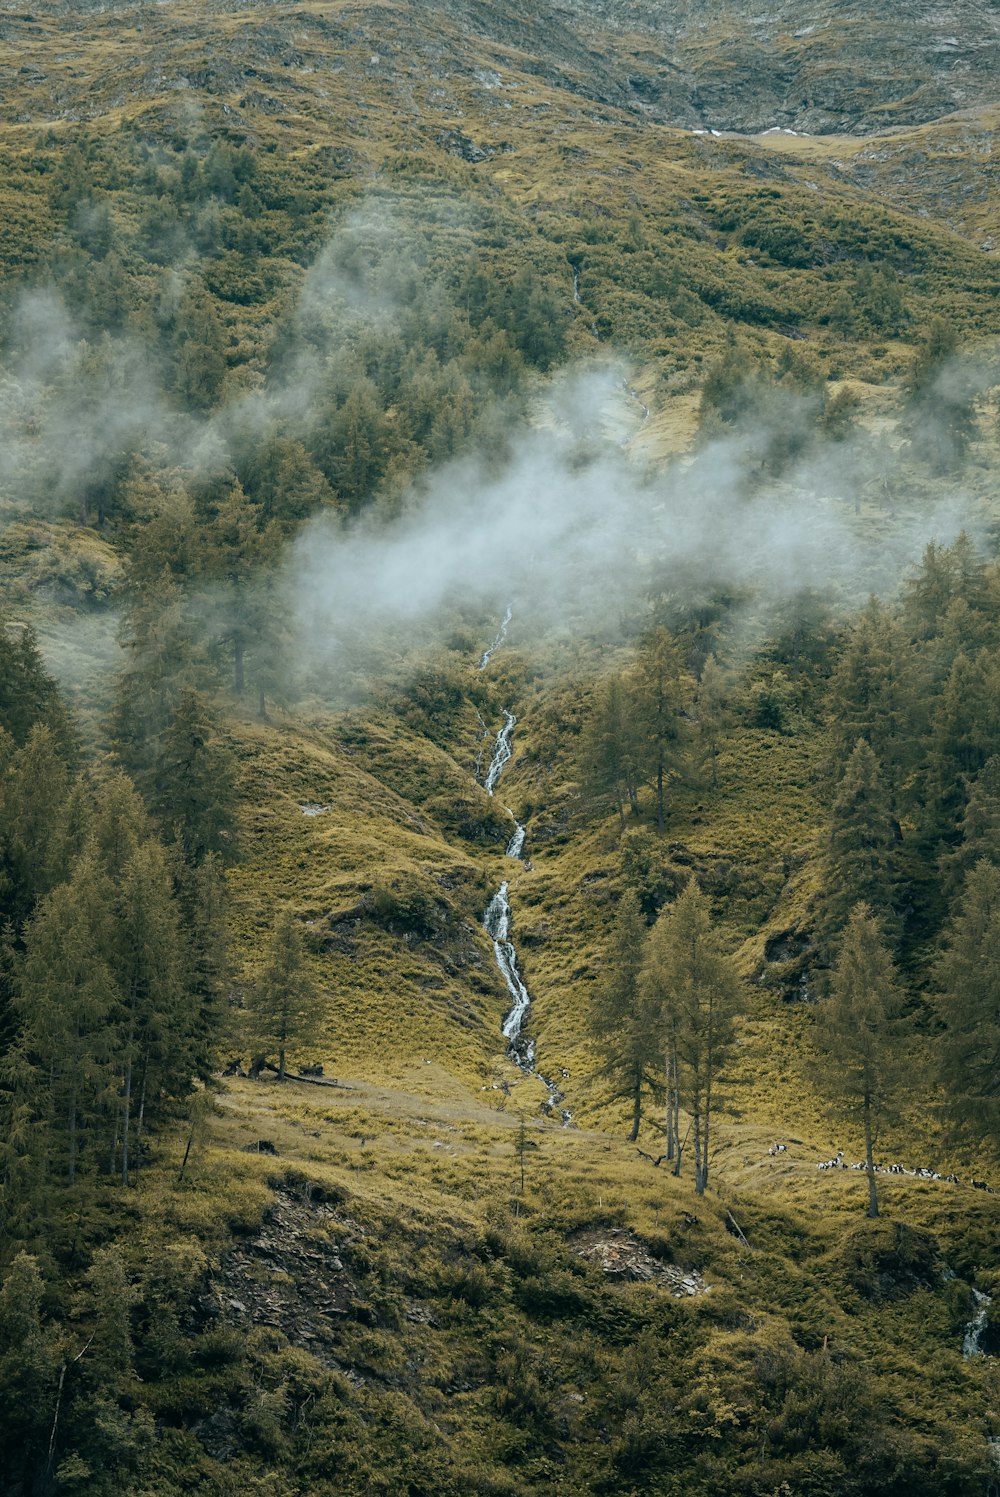 a stream of water running through a lush green hillside